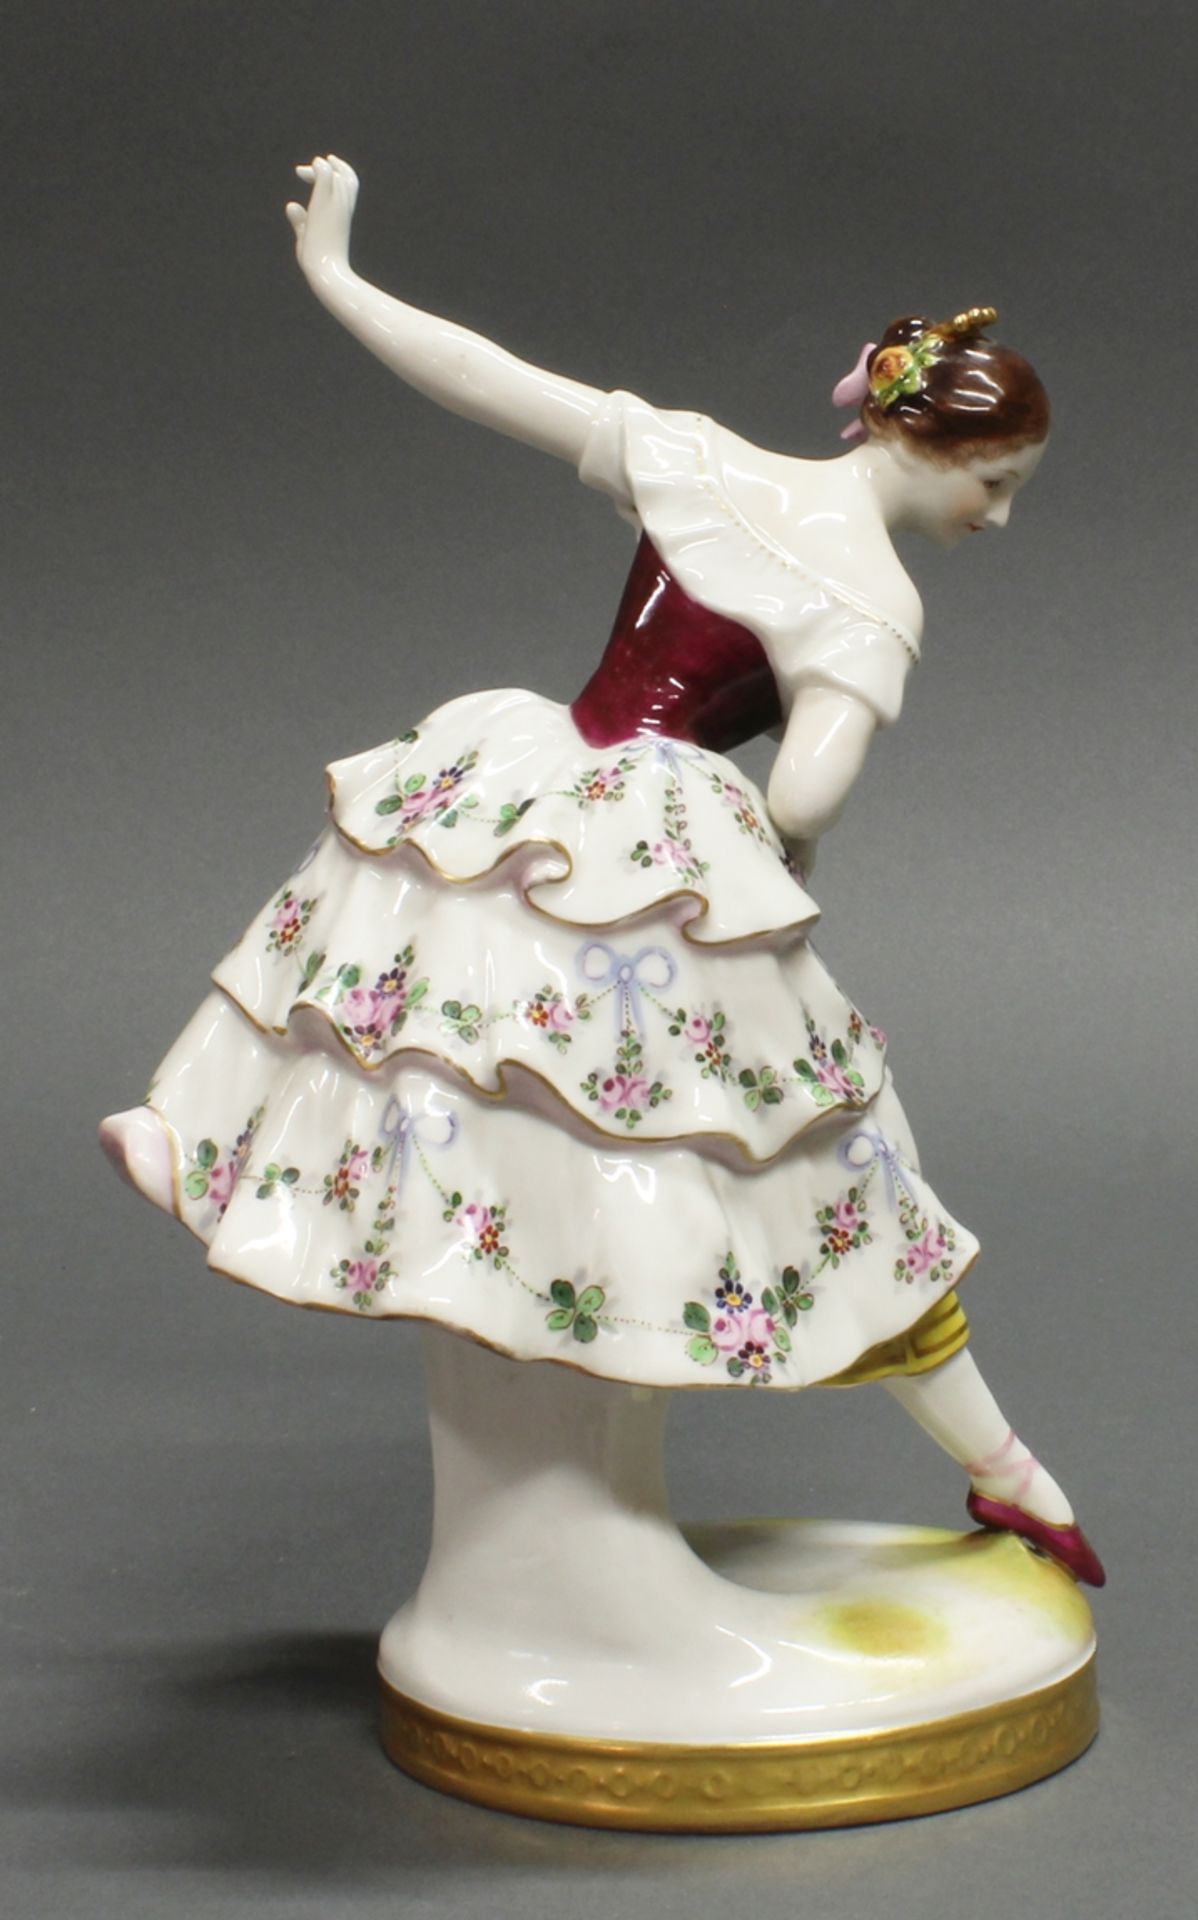 Porzellanfigur, "Tänzerin Fanny Elßler", Volkstedt, 1915-1934, polychrom und goldstaffiert, 23.5 cm - Bild 2 aus 3